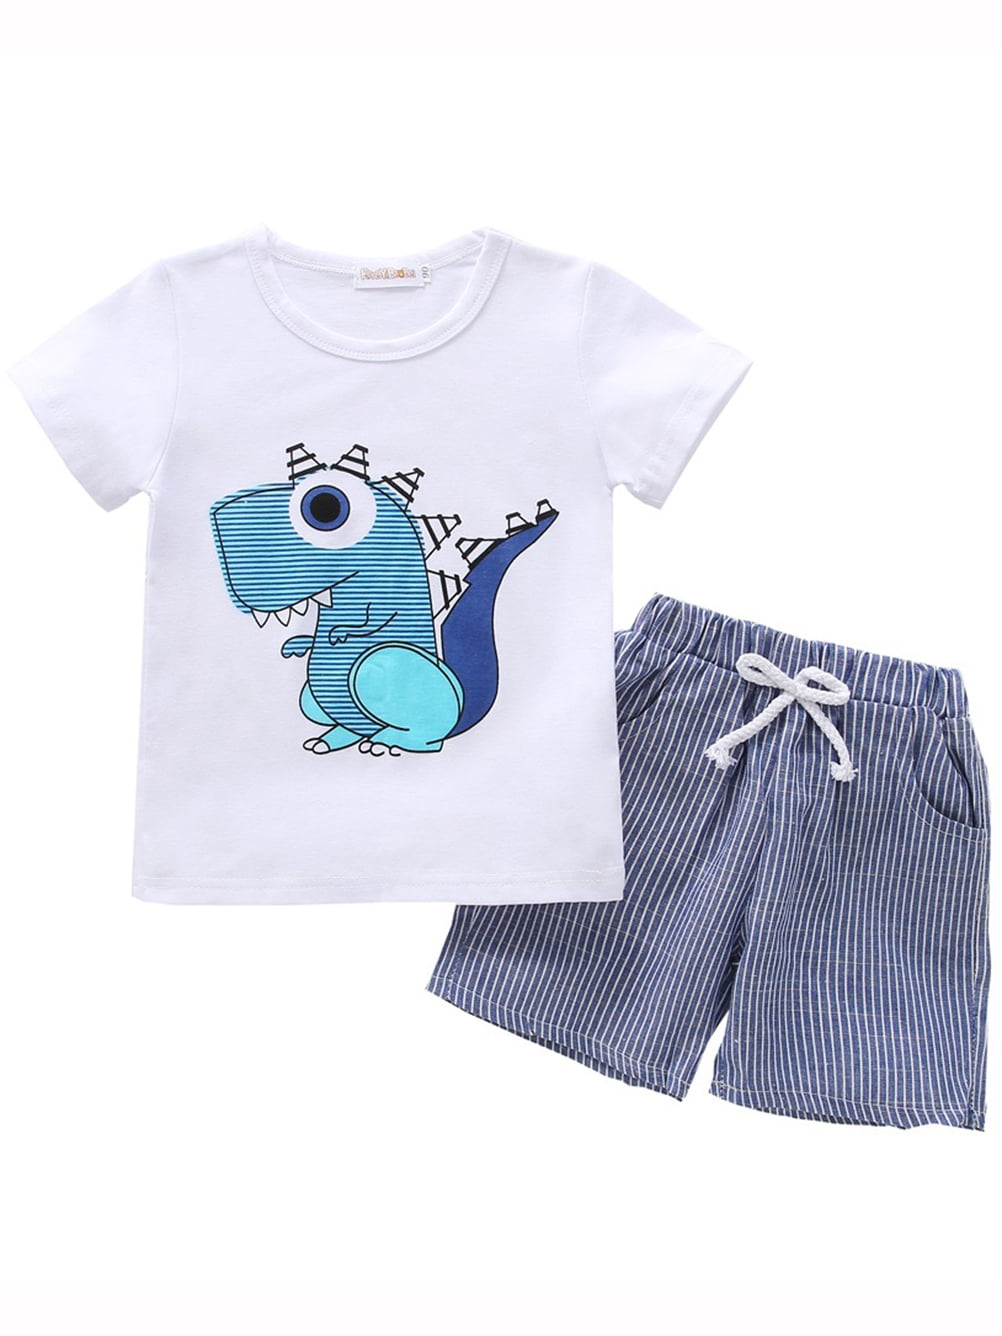 Toddler Kids Boys Dinosaur Pyjamas Pjs Set Casual T-shirt Top Tee Shorts Clothes